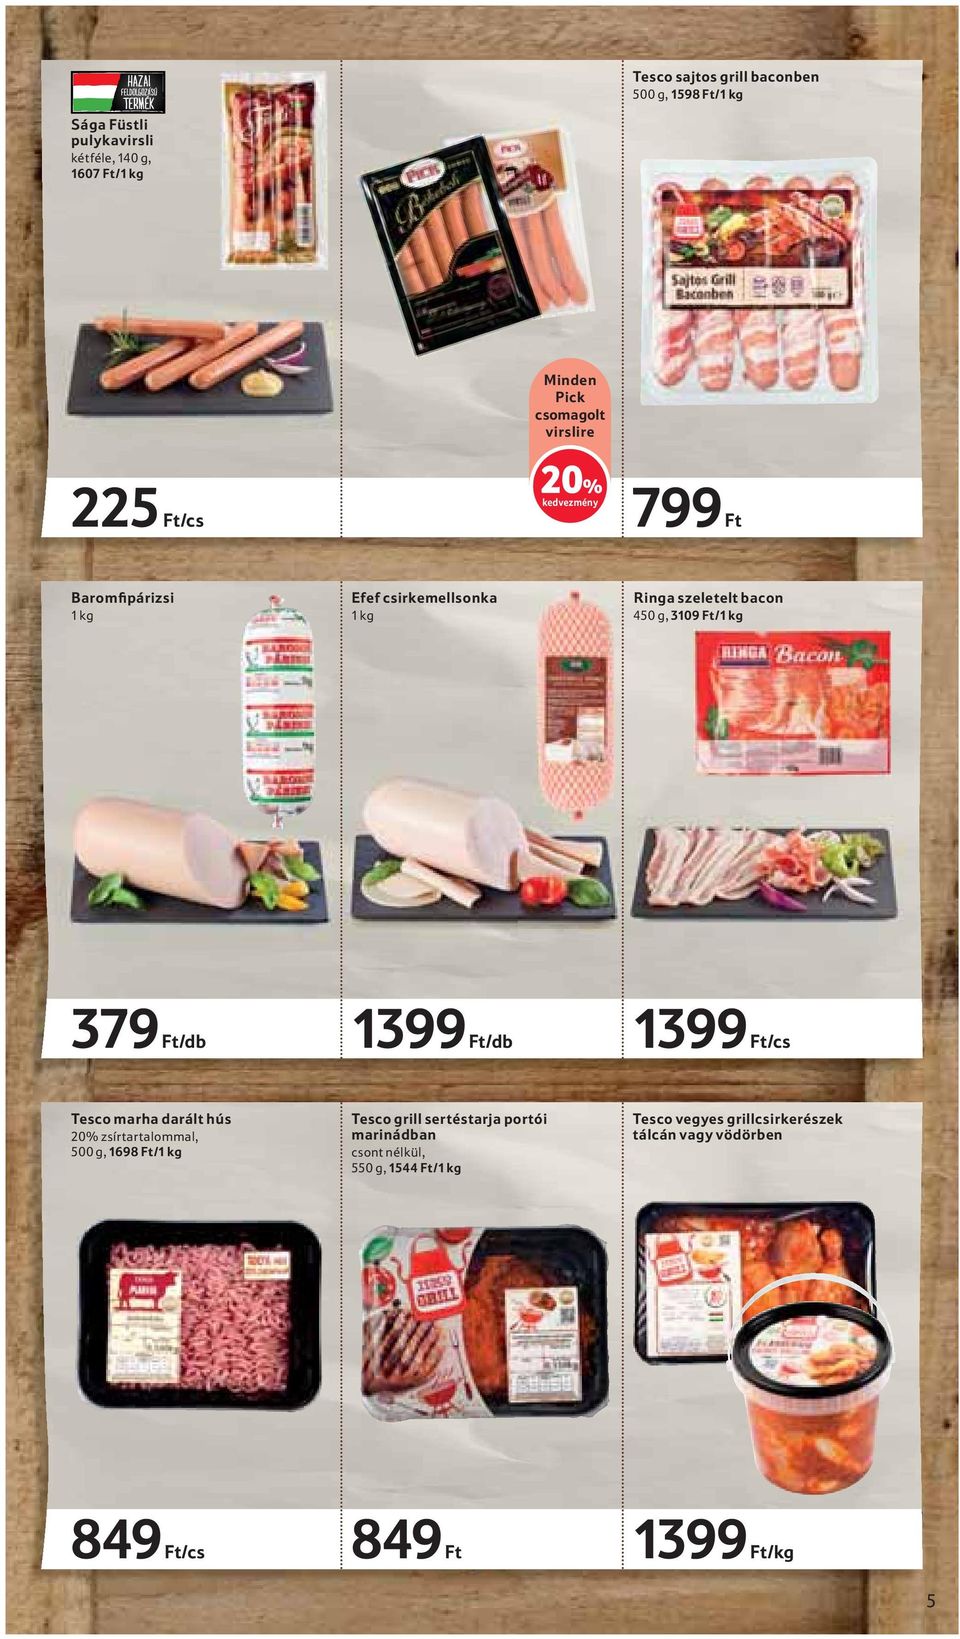 1399 Ft/db 1399 Ft/cs Tesco marha darált hús 20% zsírtartalommal, 500 g, 1698 Ft/ Tesco grill sertéstarja portói